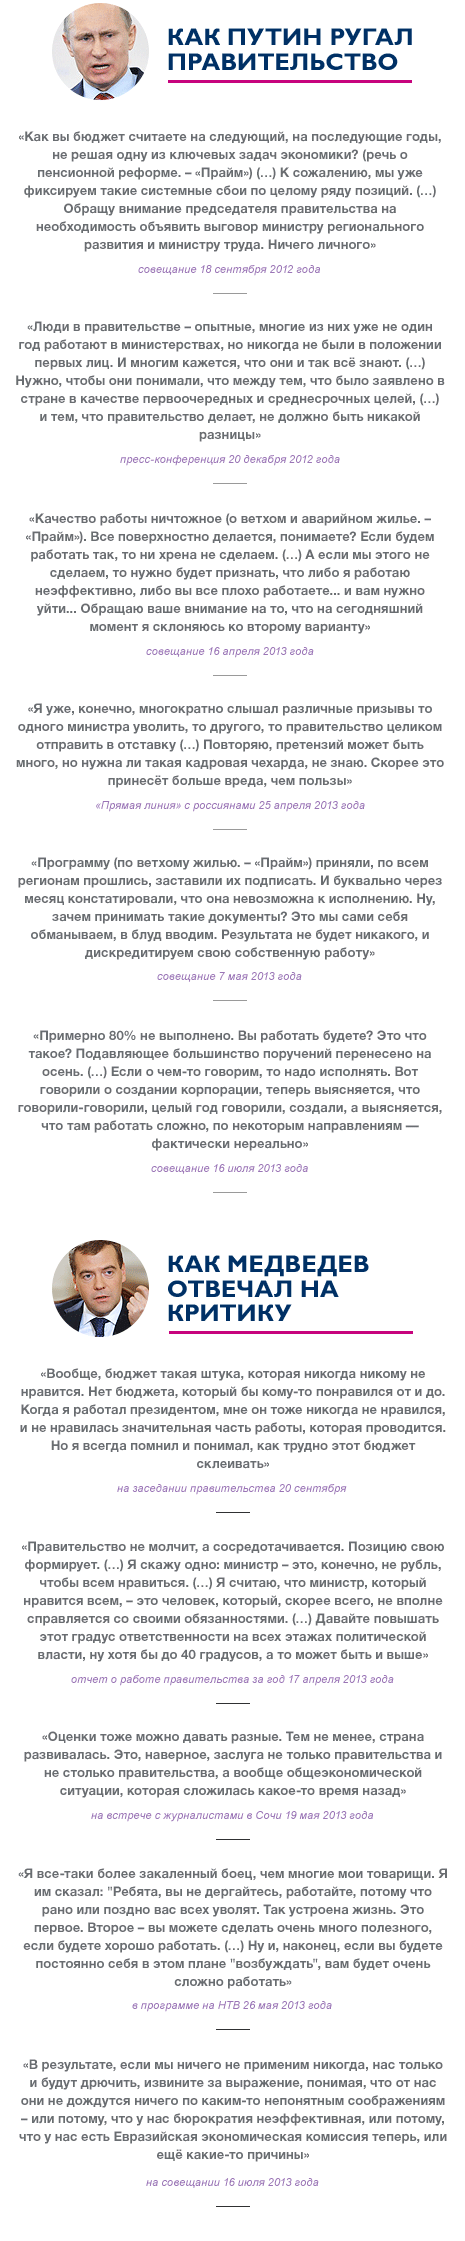 Цитаты Путина и Медведева о работе правительства